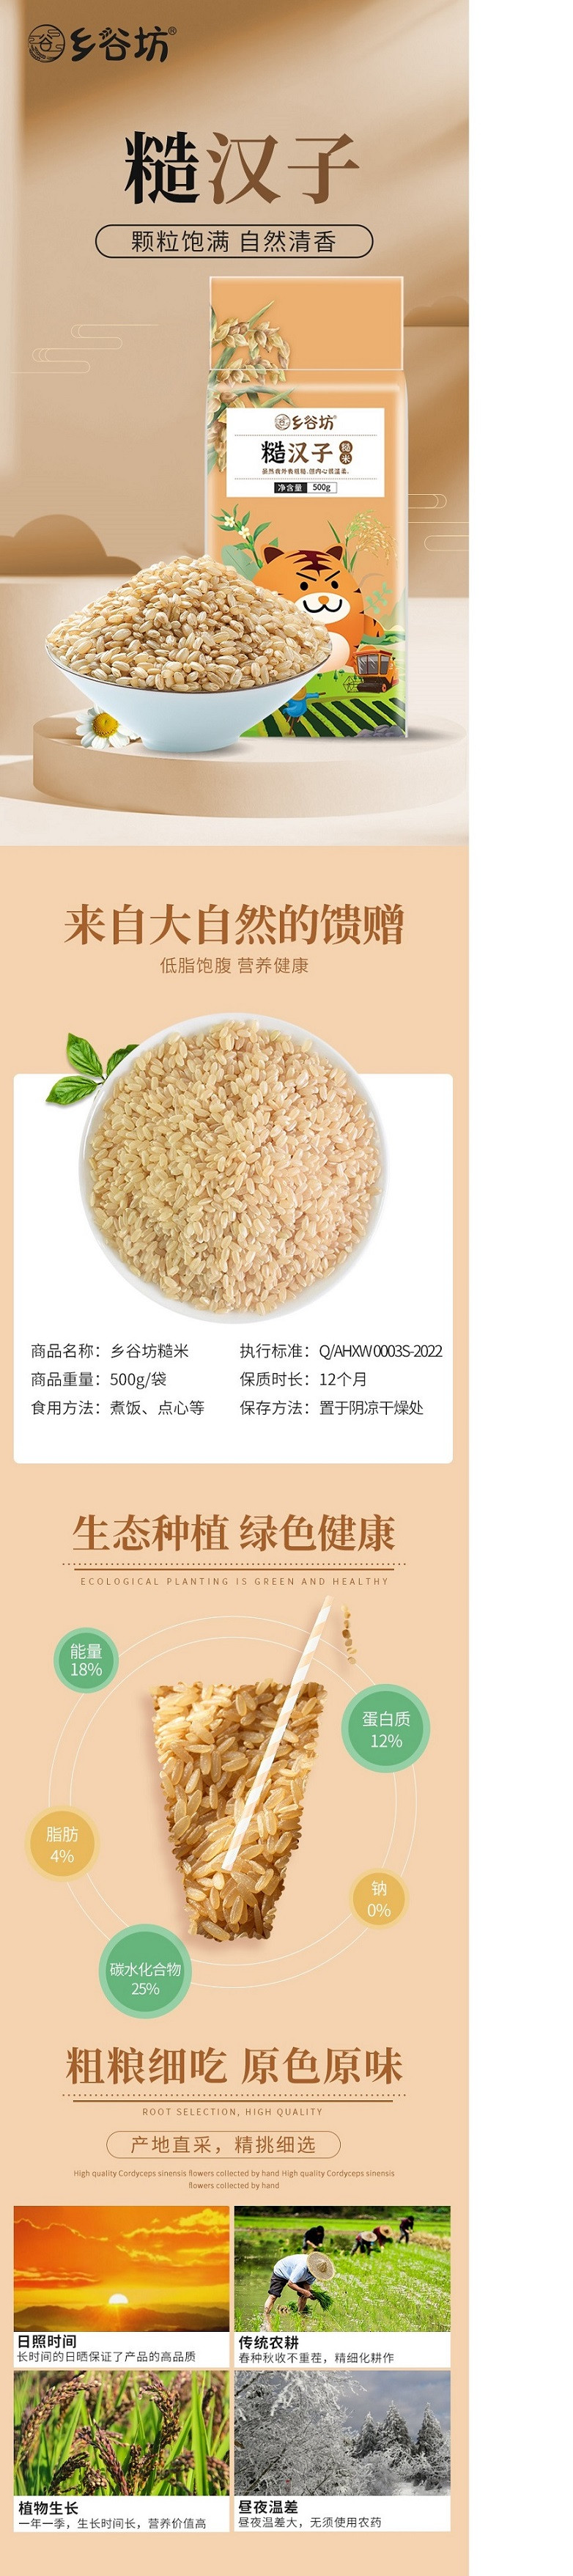  乡谷坊 糙汉子糙米500g 杂粮糙米